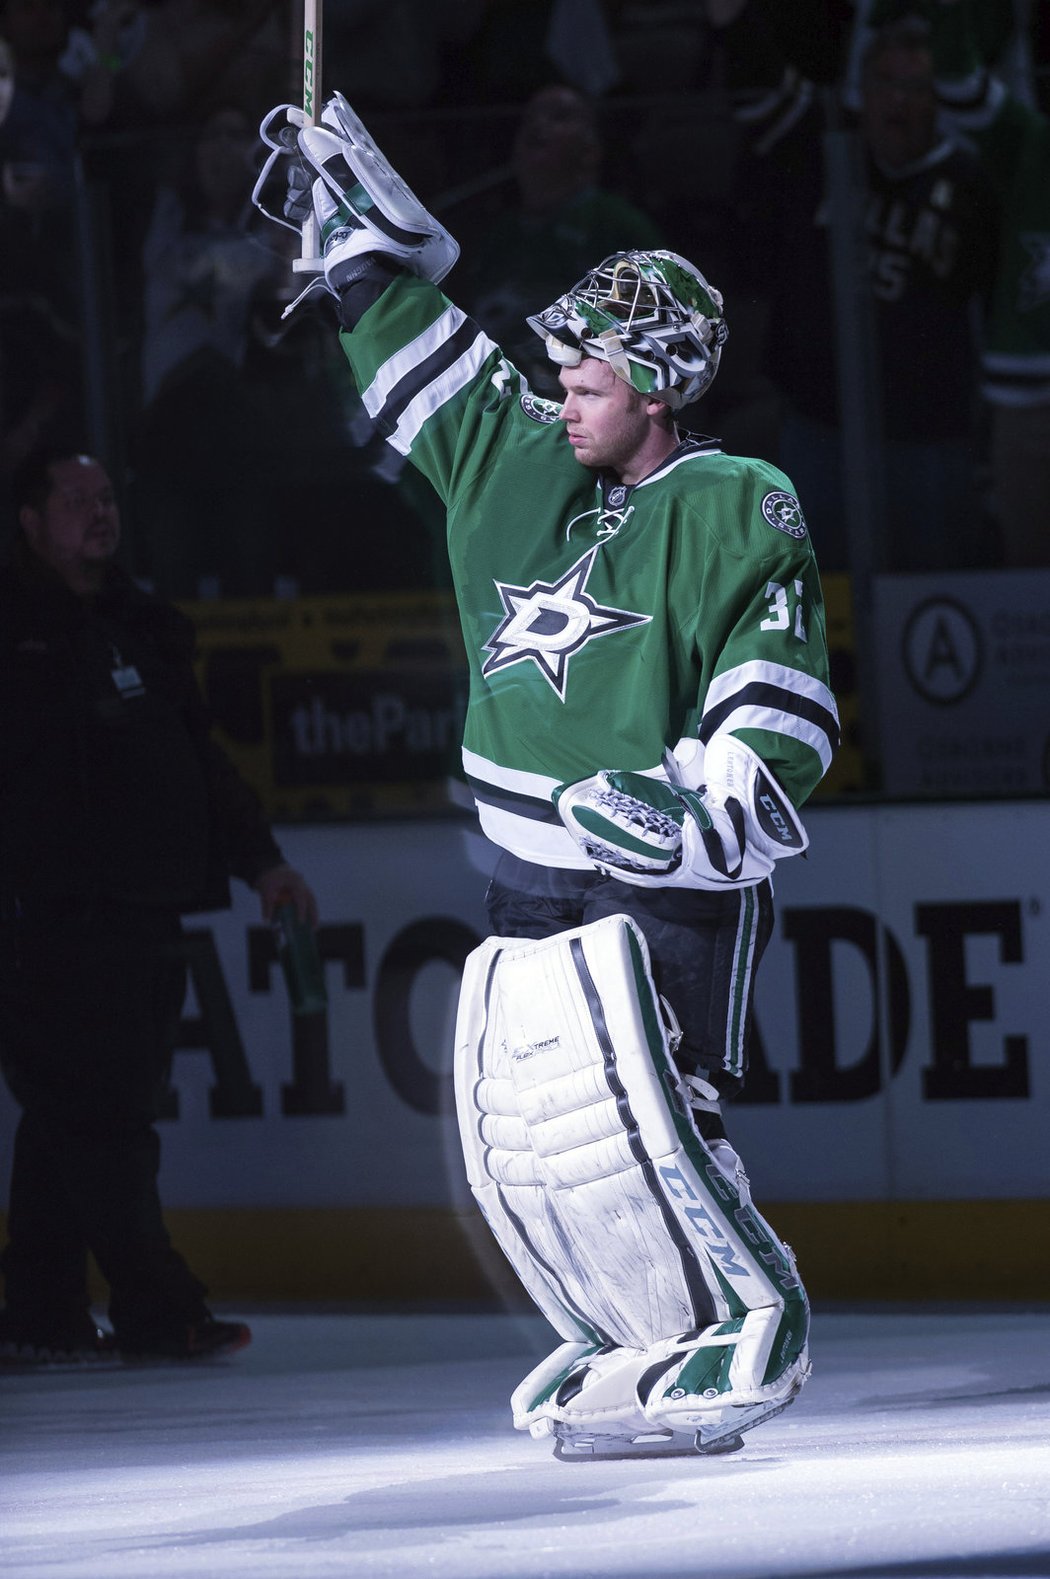 Kari Lehtonen z Dallasu byl díky 37 úspěšným zákrokům zvolen hlavní hvězdou večera i na serveru NHL.com.